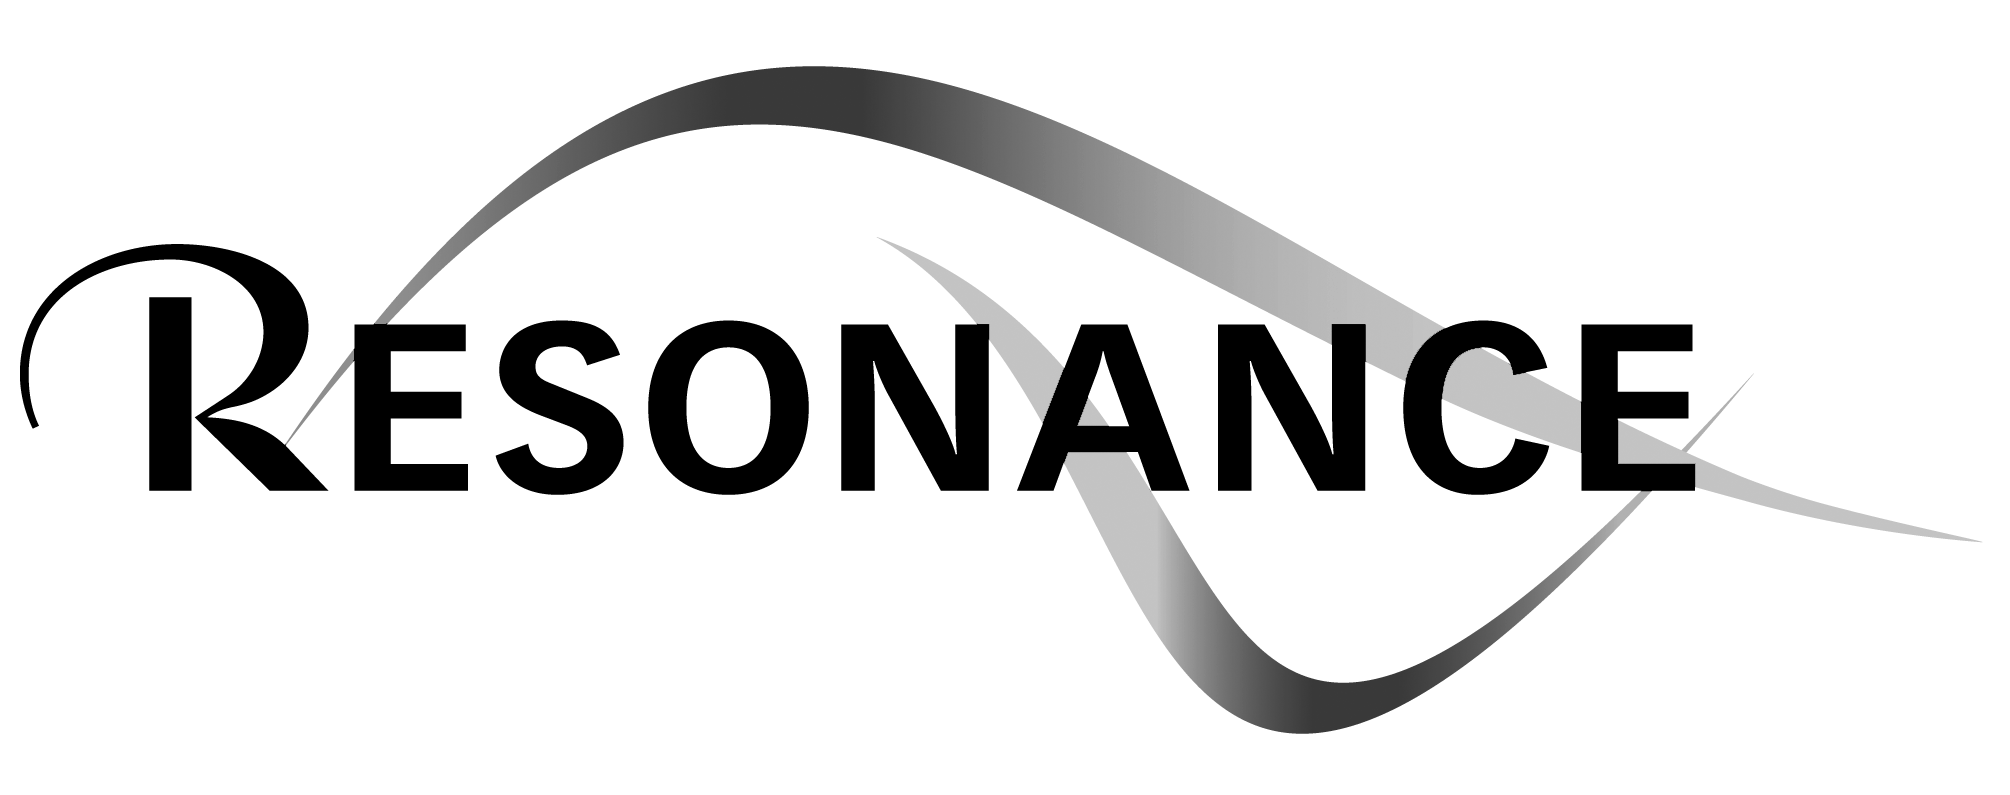 resonancejazz logo